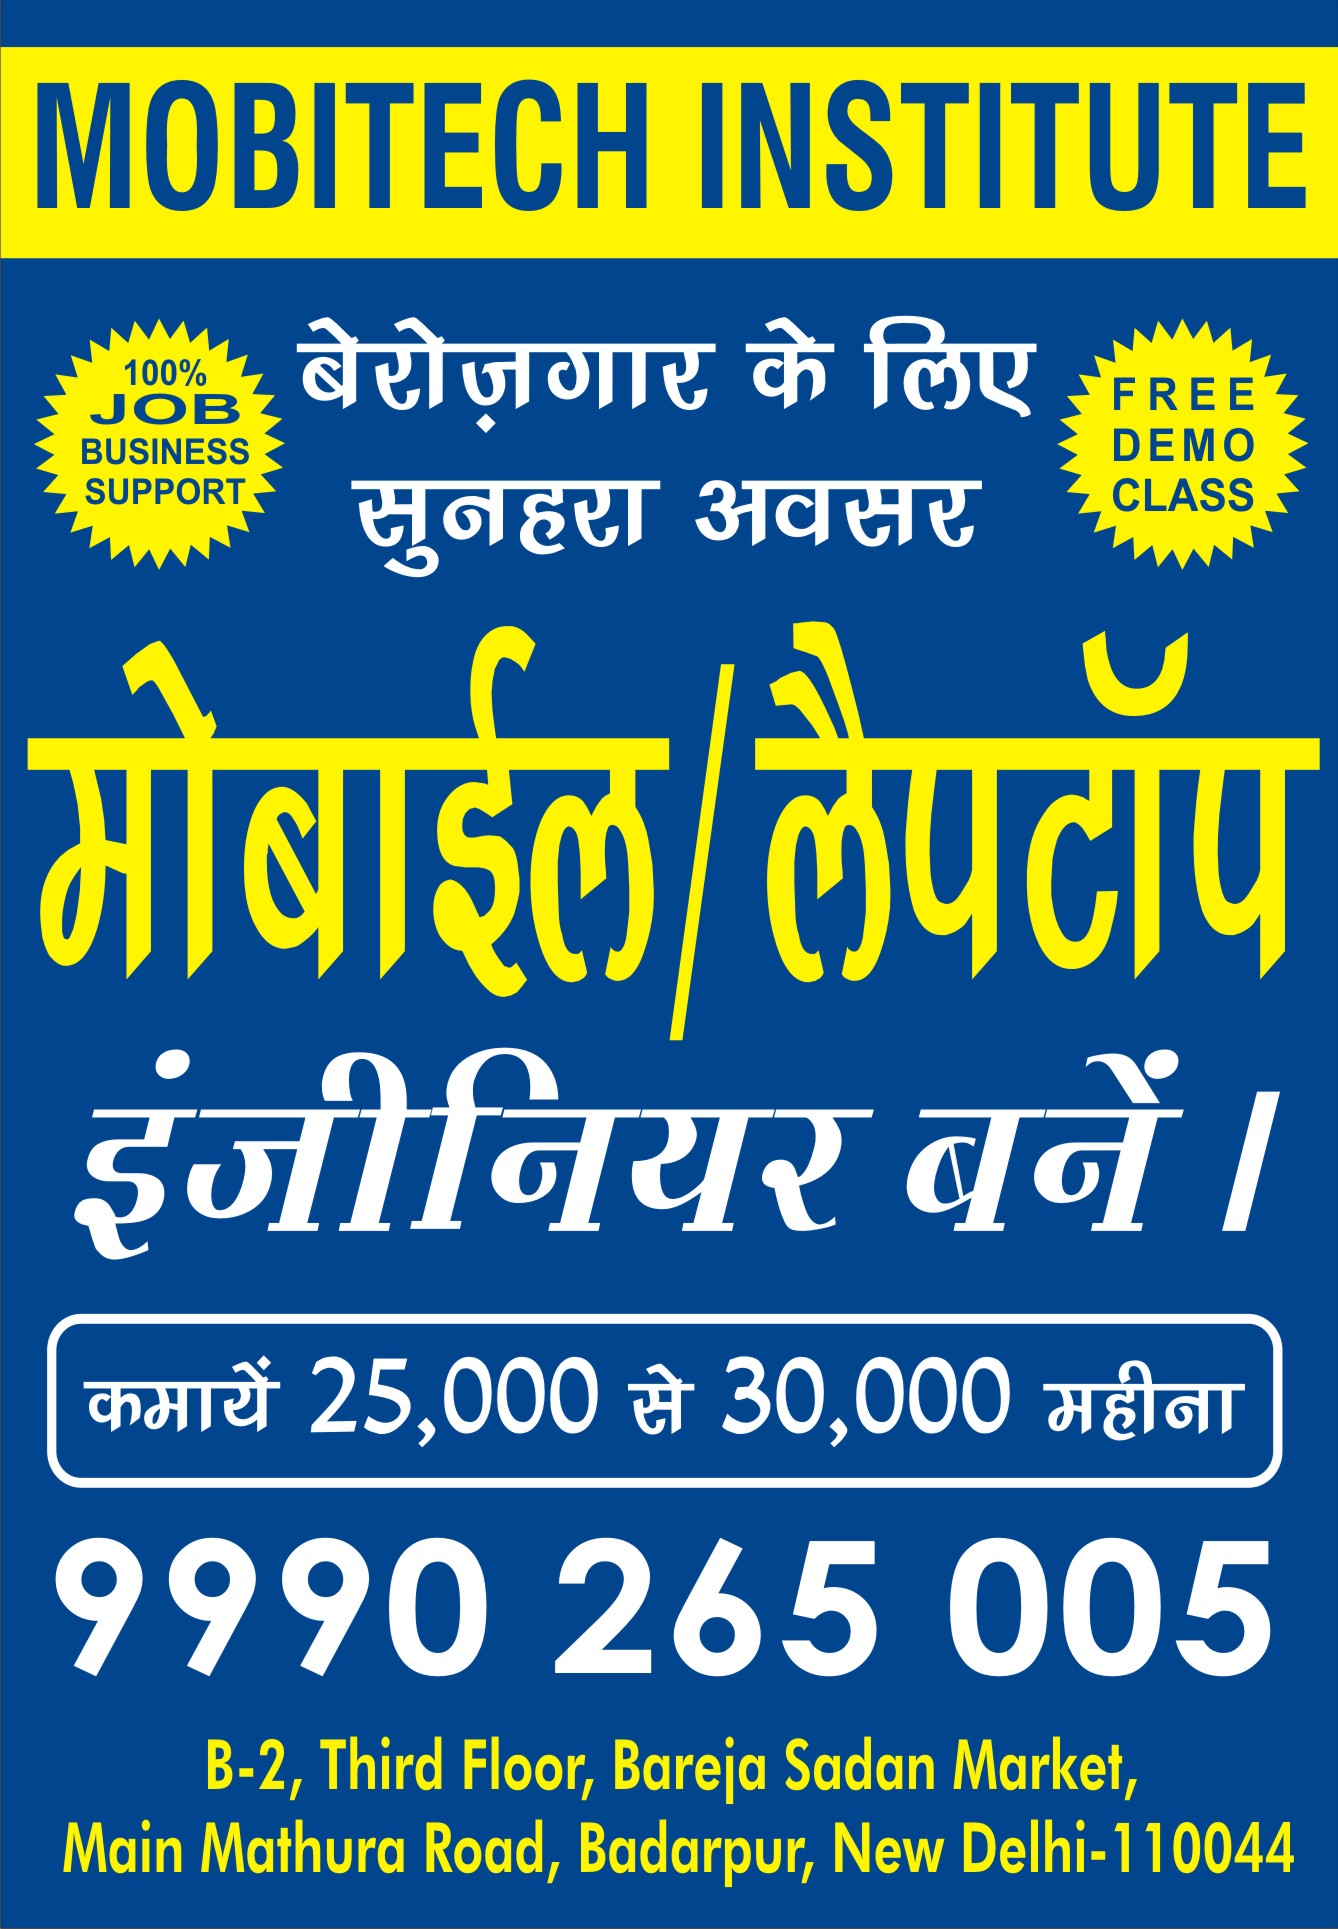 Best Mobile Repairing Institute in Badarpur | Mobitech Institute | best mobile repairing course in Delhi, best mobile repairing institute in Delhi, best mobile repairing coaching center in Delhi, best mobile repairing classes in Delhi  - GL19733